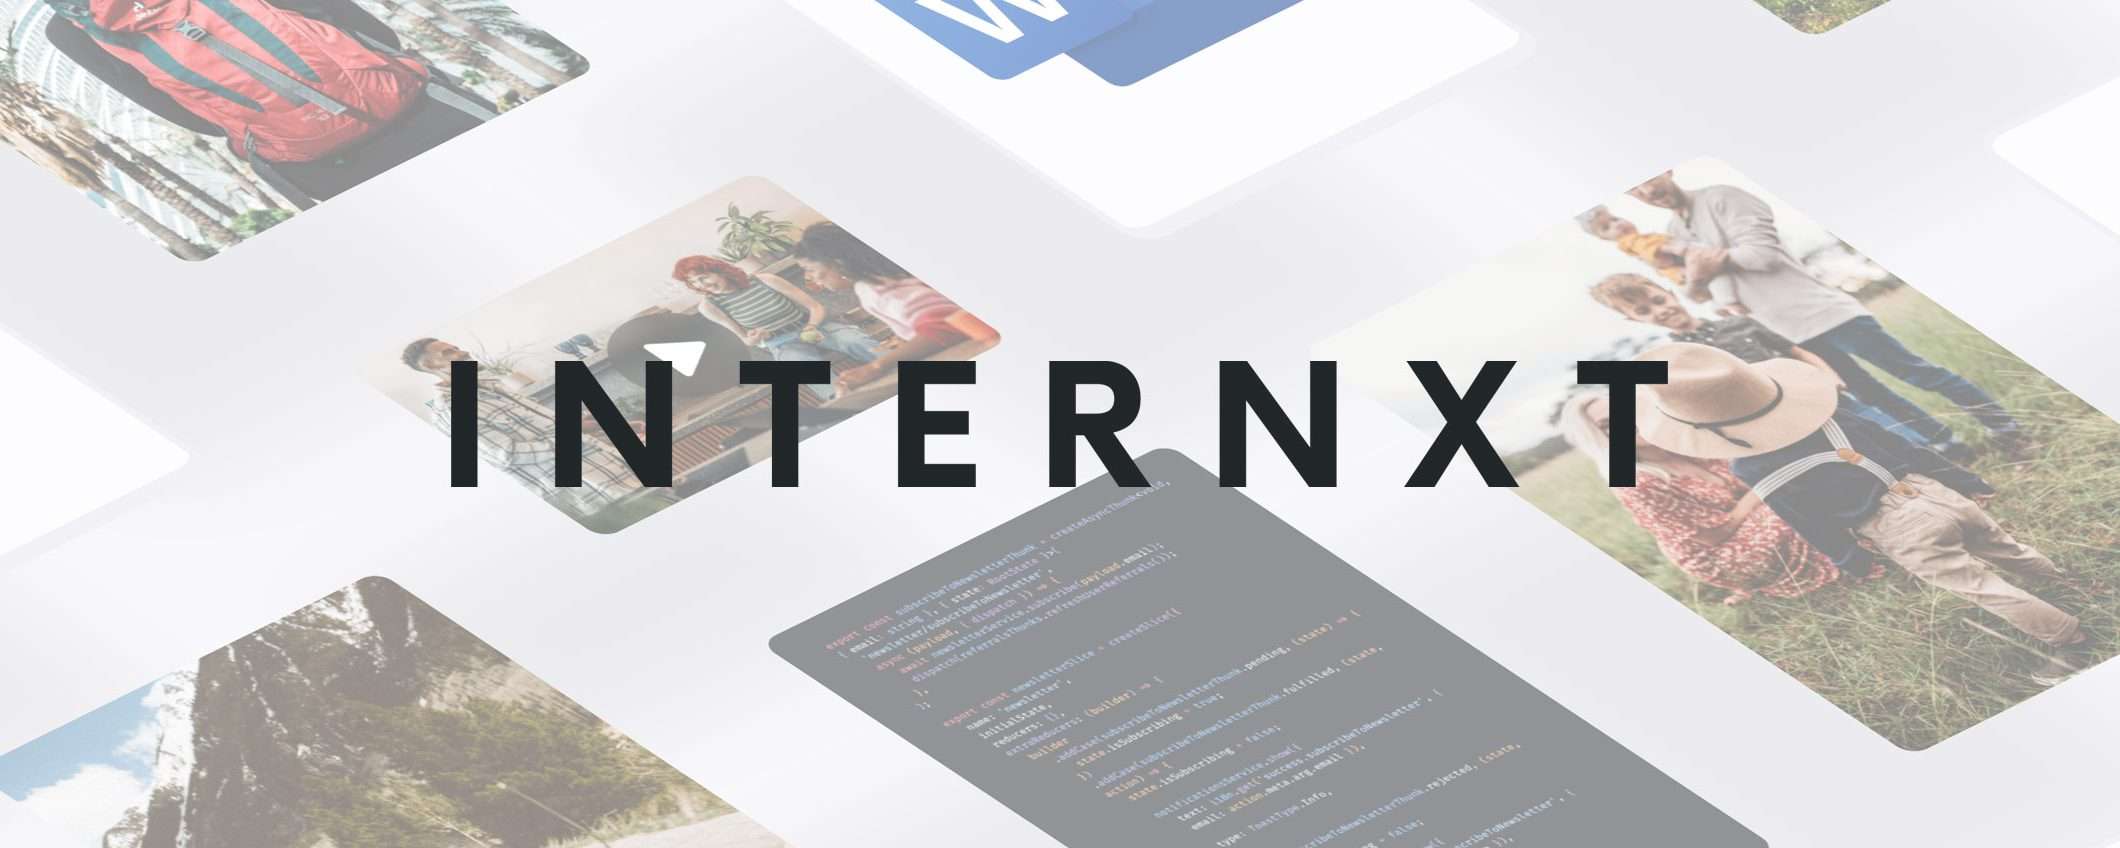 Internxt: fino a 10 TB sul cloud, anche a vita